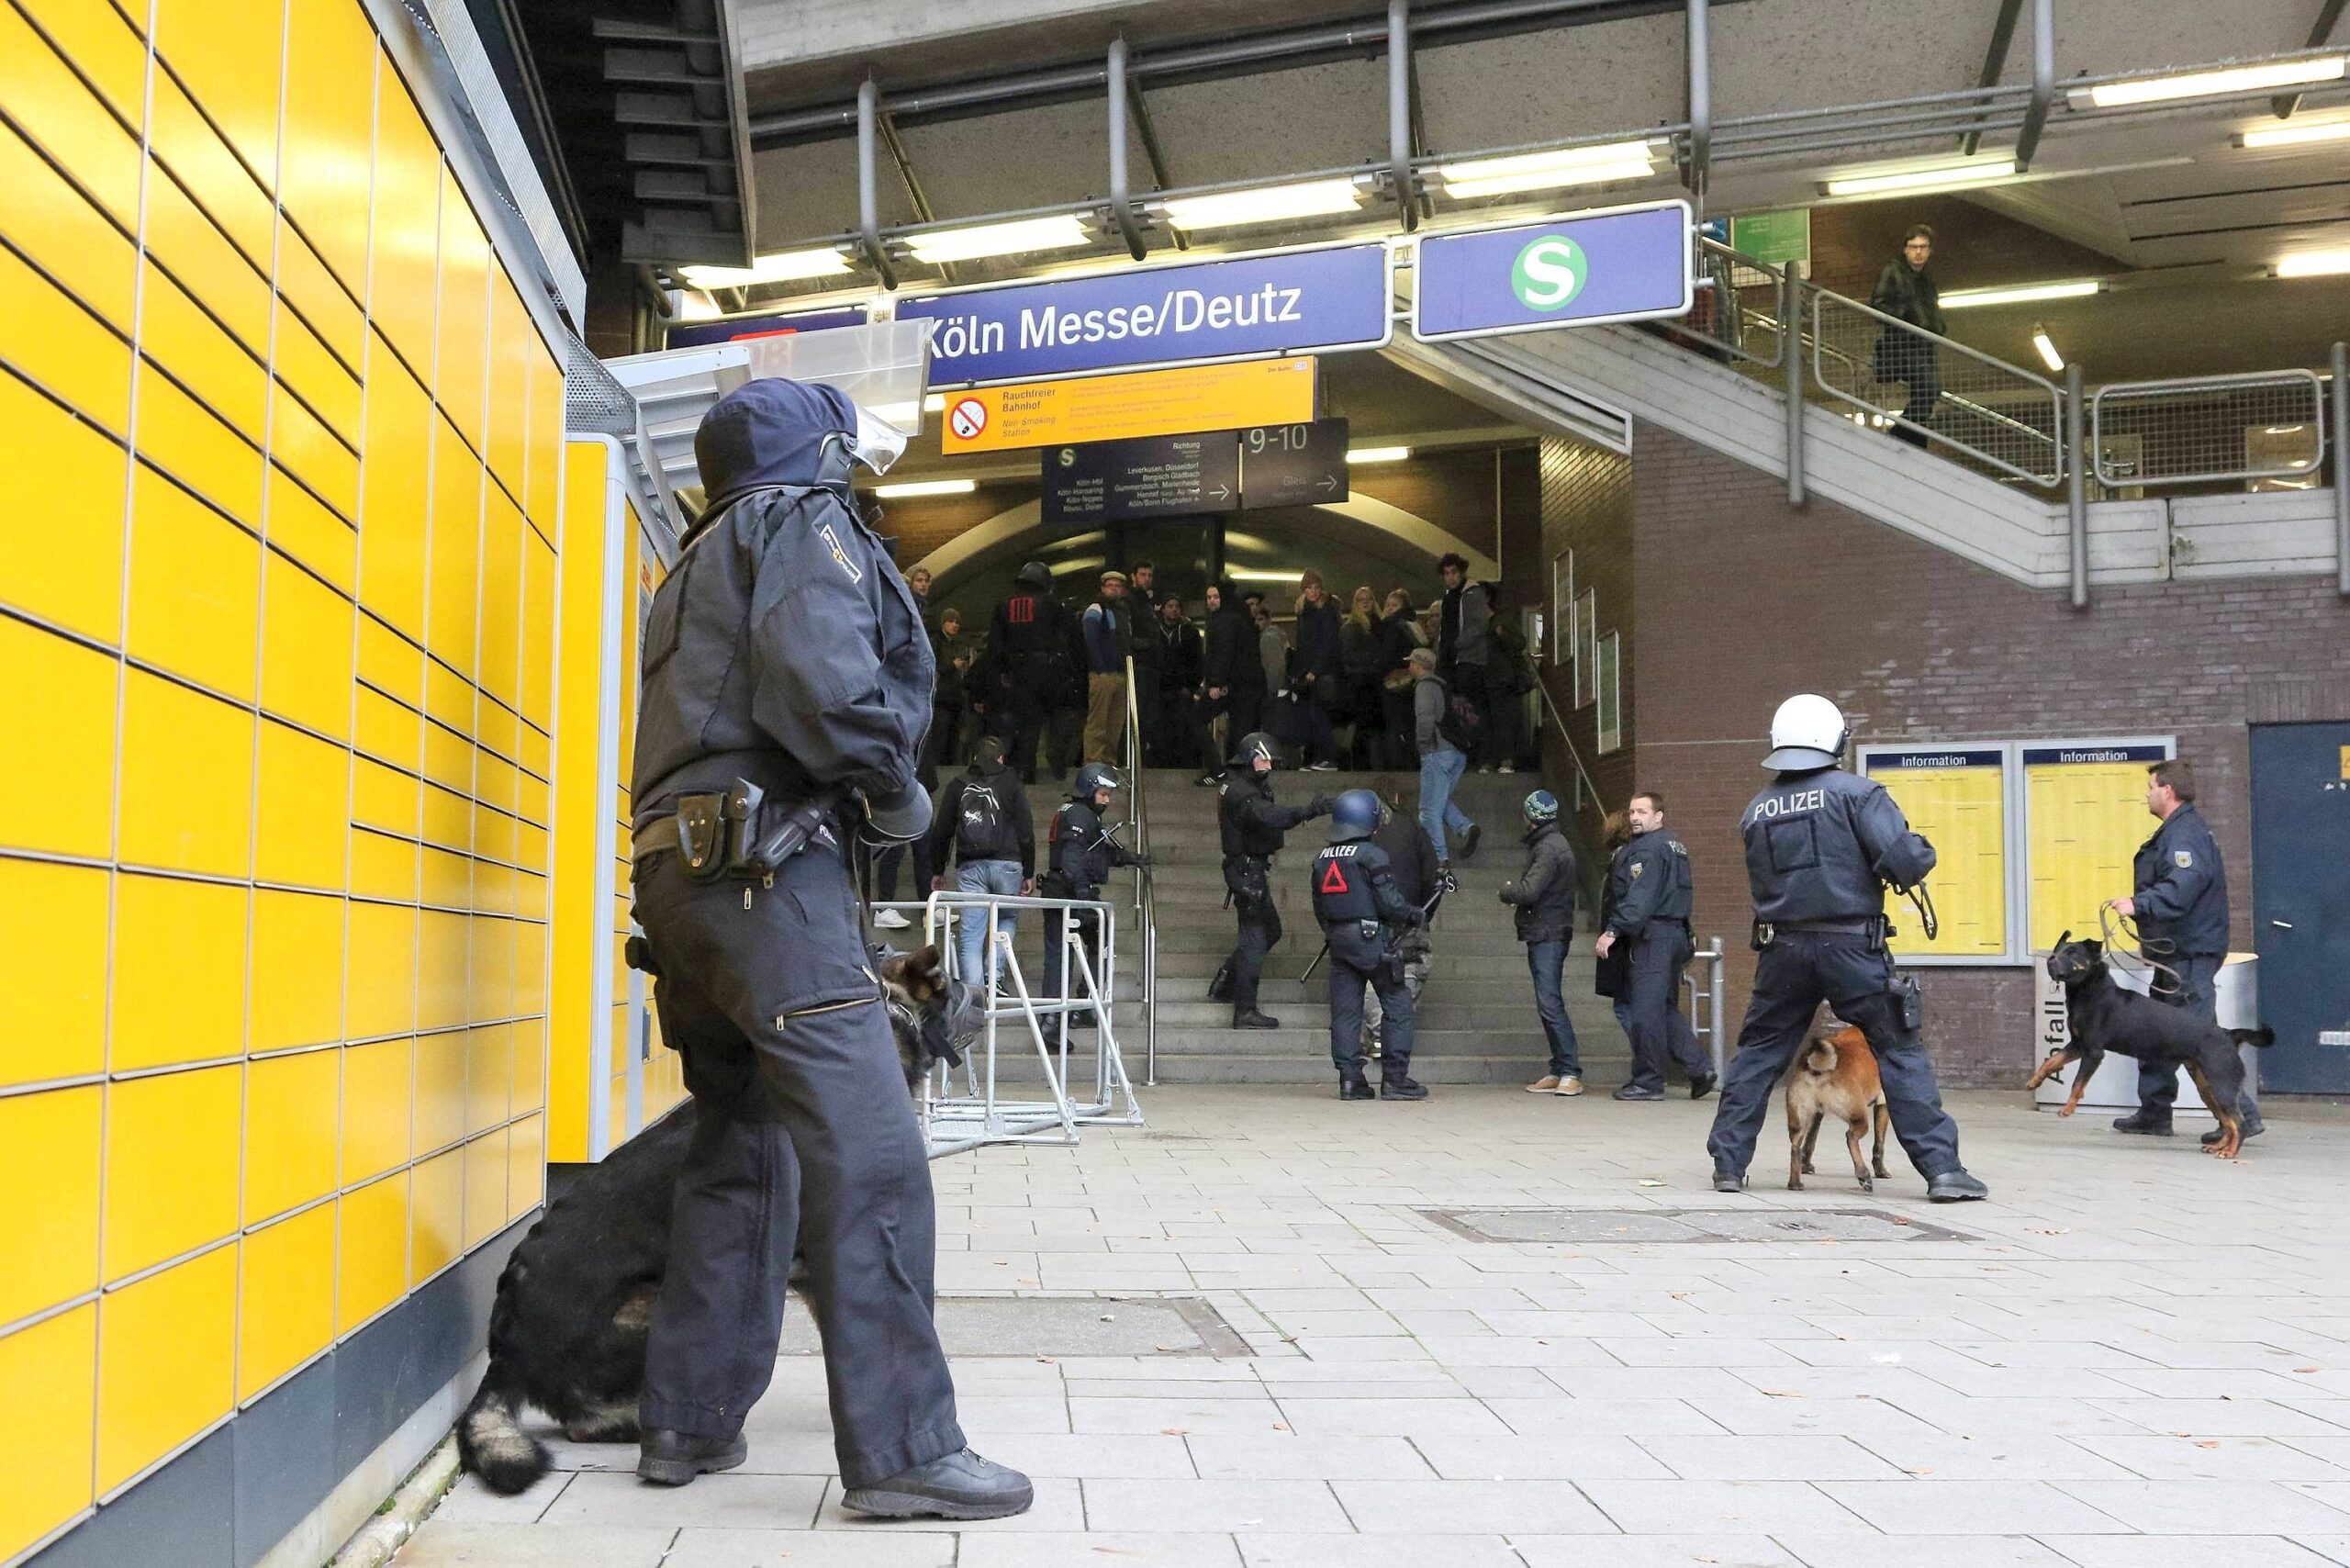 Am Bahnhof Köln Messe/Deutz trennt die Polizei linke und rechte Demonstranten. Bei Ausschreitungen zwischen linken und rechten Demonstranten hat es im Vorfeld der Demo bereits Verletzte und Festnahmen gegeben.